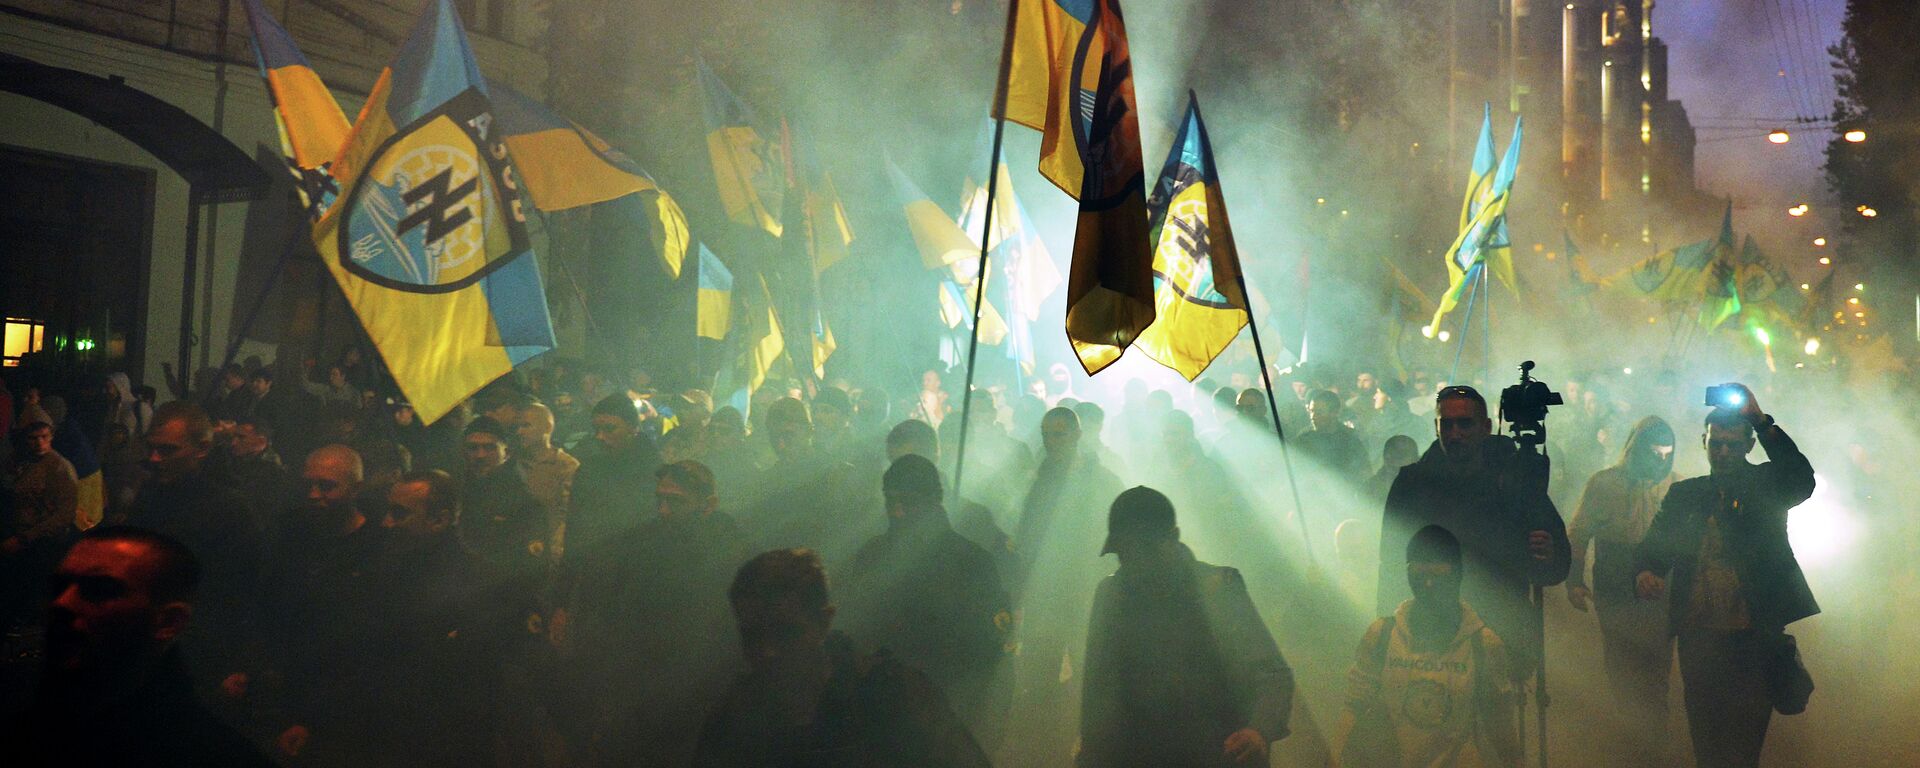 Украјински националисти из Азов батаљона током протеста у Кијеву. - Sputnik Србија, 1920, 28.03.2022